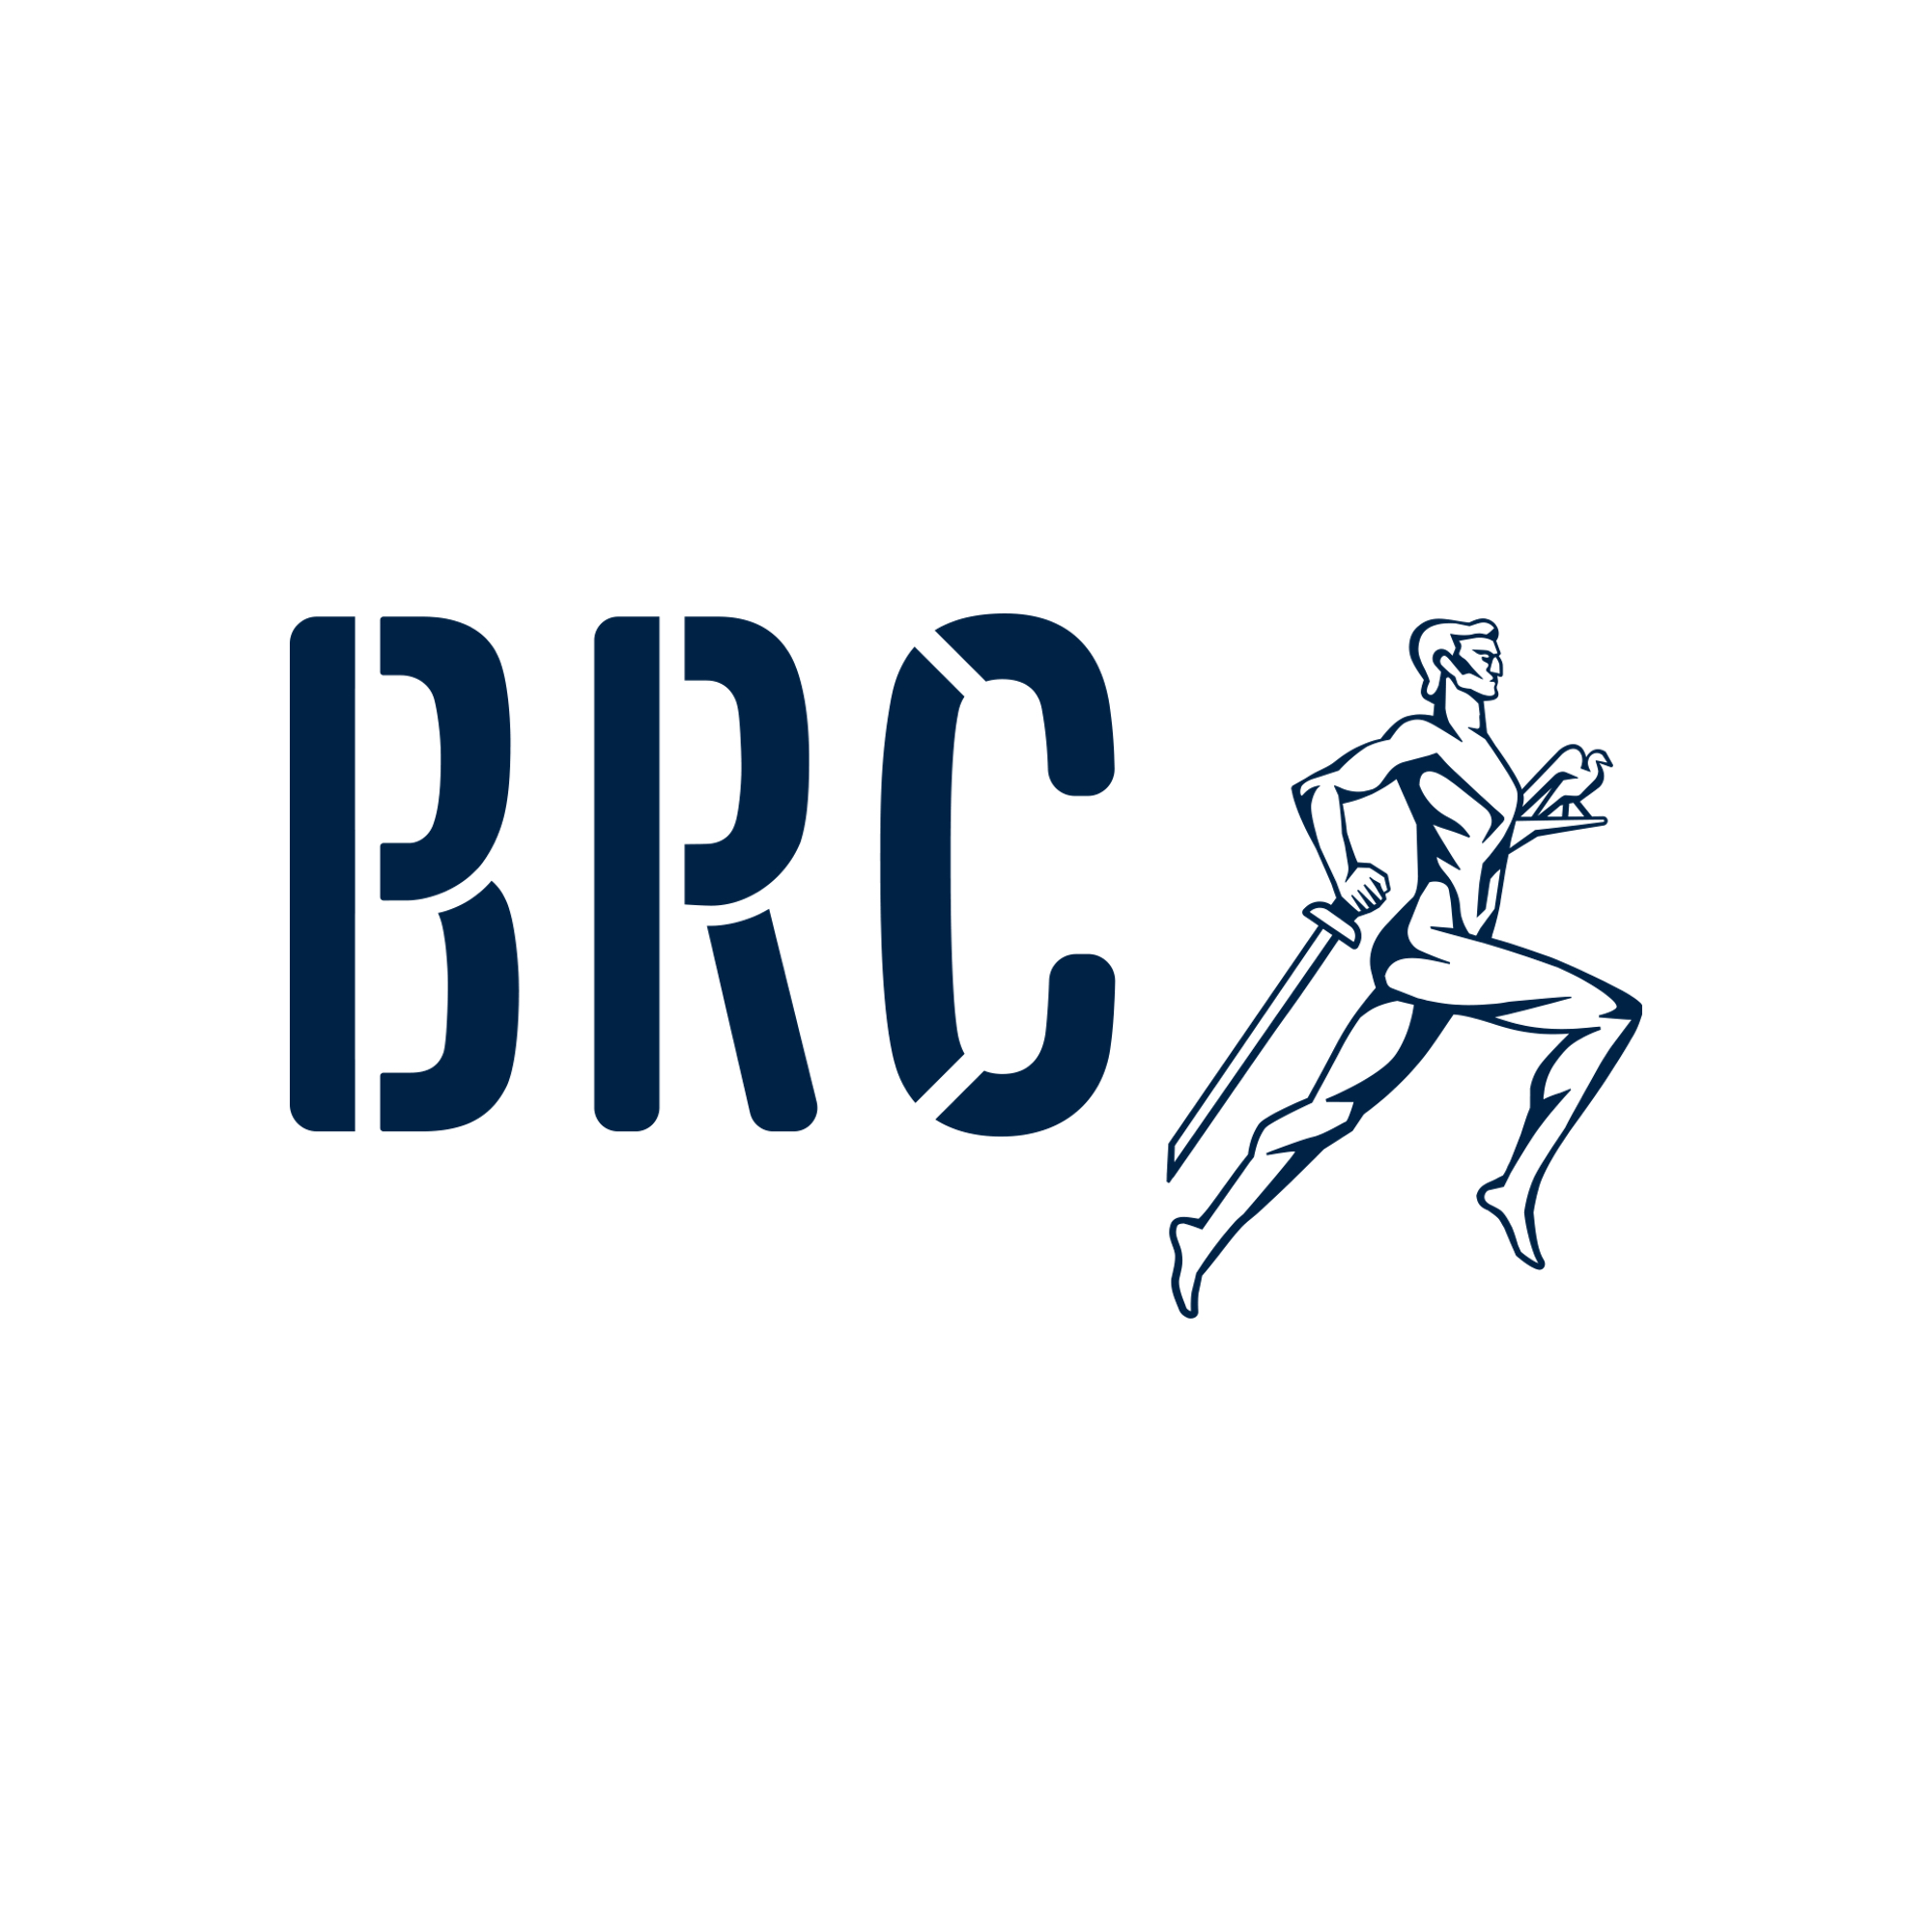 Belgrade Running Club Logo